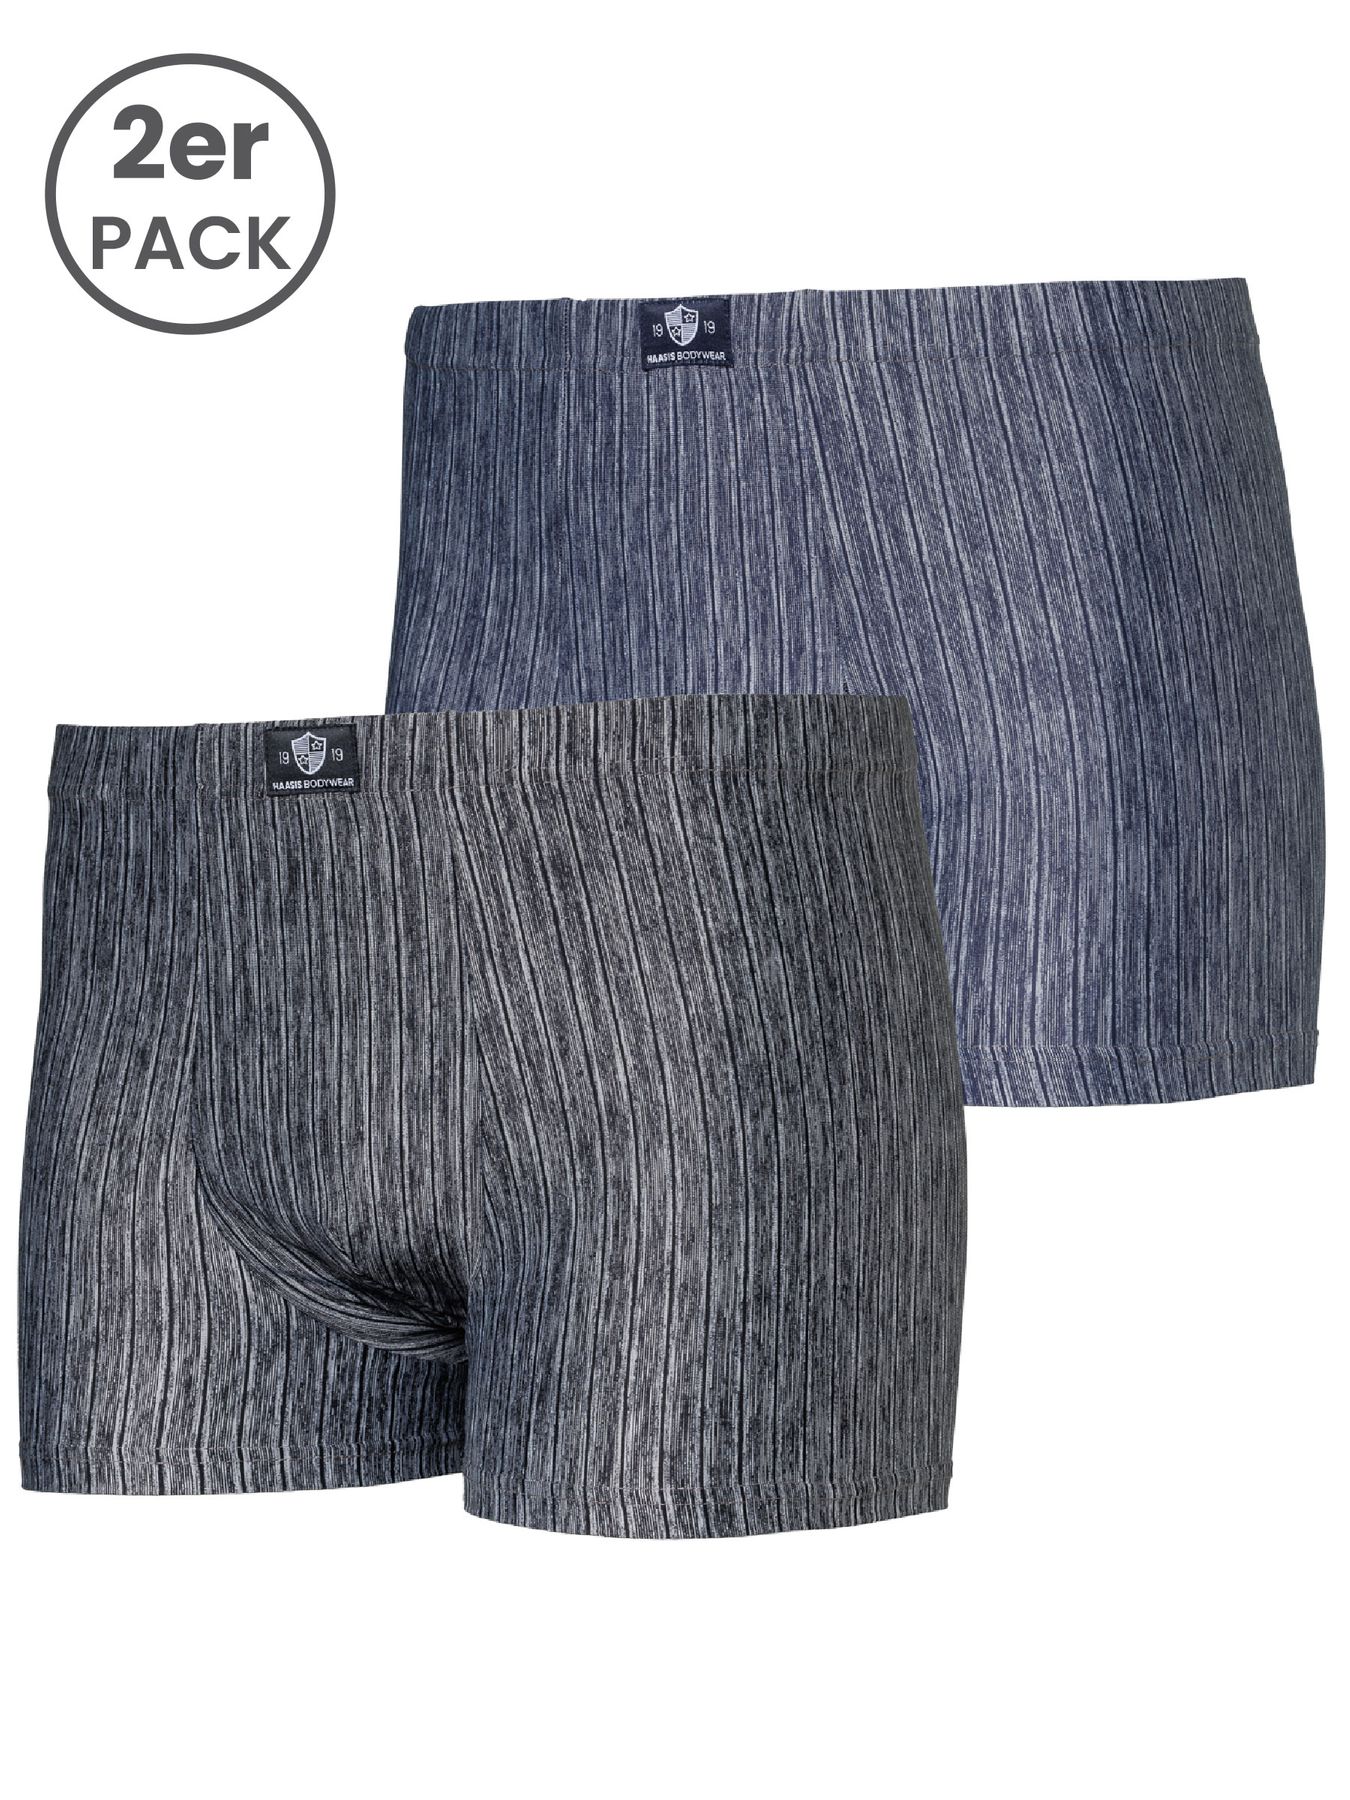 Herren Pants, ohne Eingriff, 2er Pack, Single-Jersey, recycelte Q-Nova Nylon-Faser